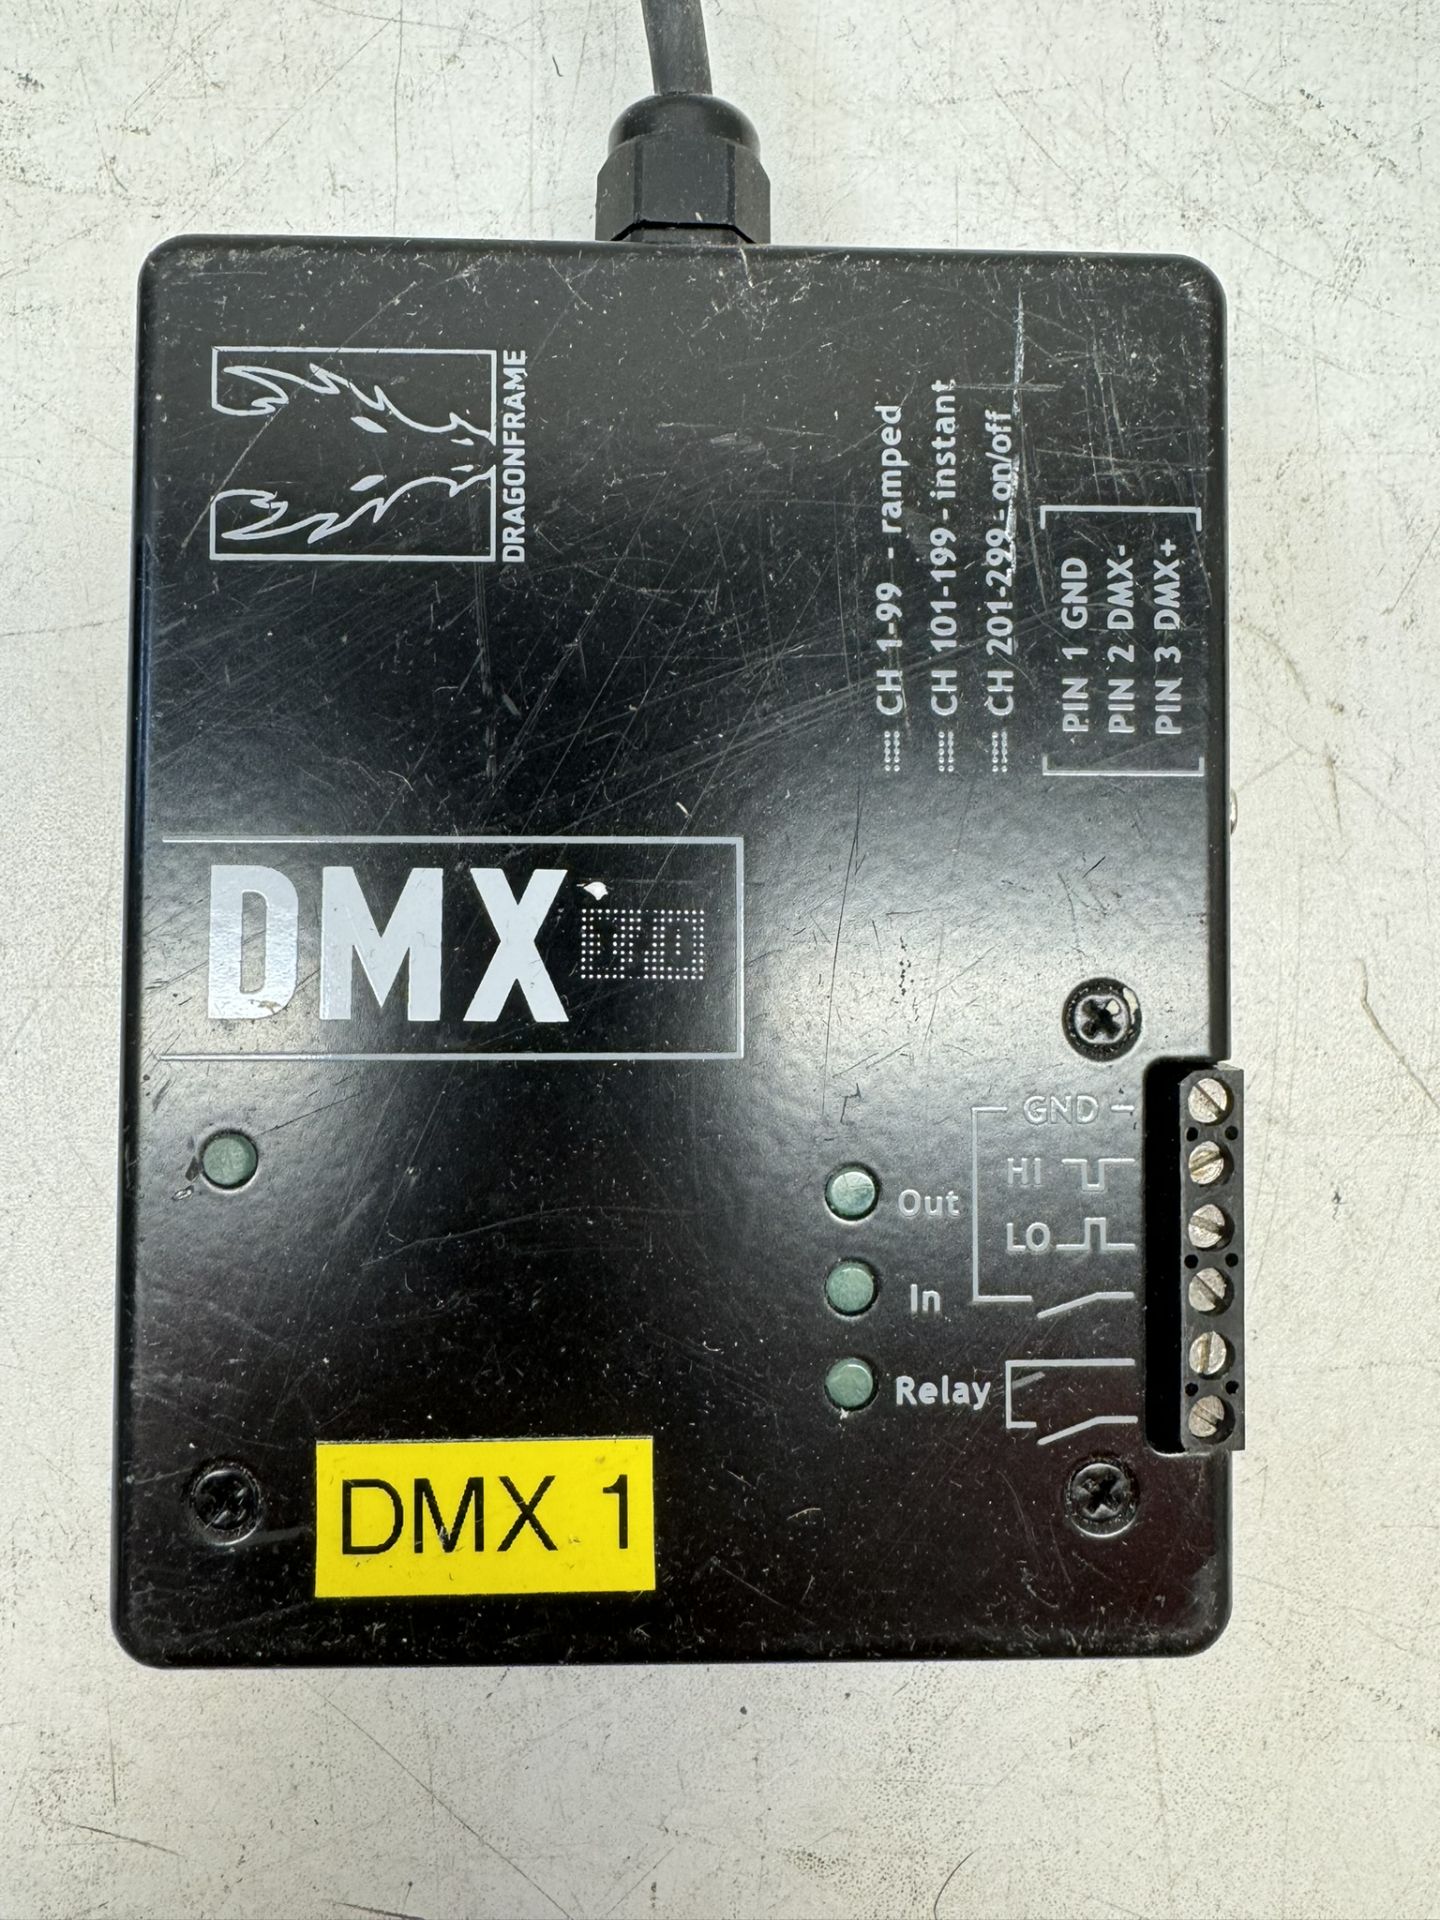 Dragonframe DMX I/O ADVANCED LIGHTING CONTROL - Image 3 of 3